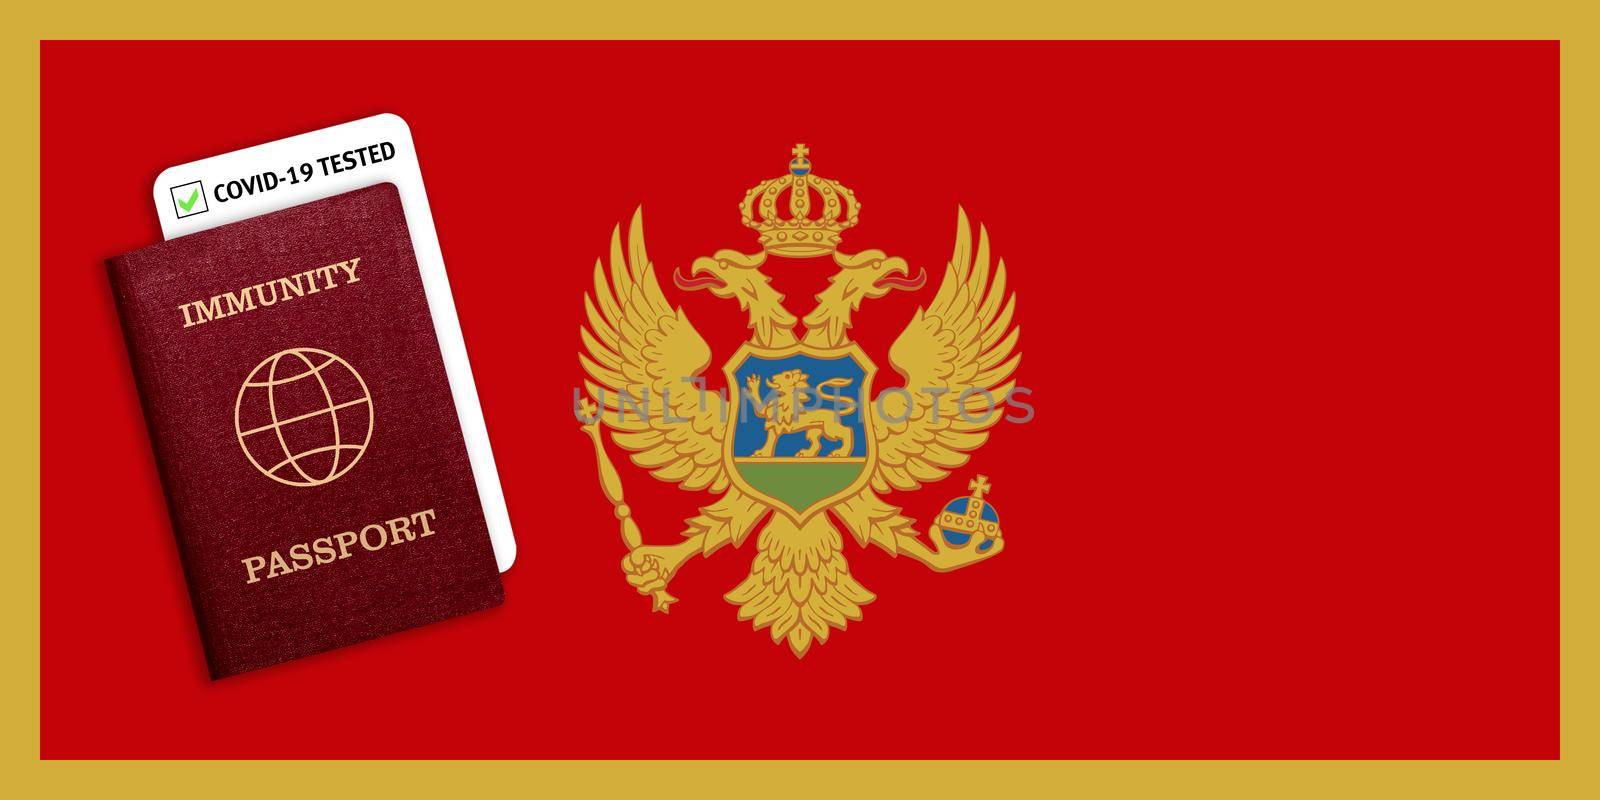 Immunity passport and coronavirus test with flag of Montenegro by galinasharapova